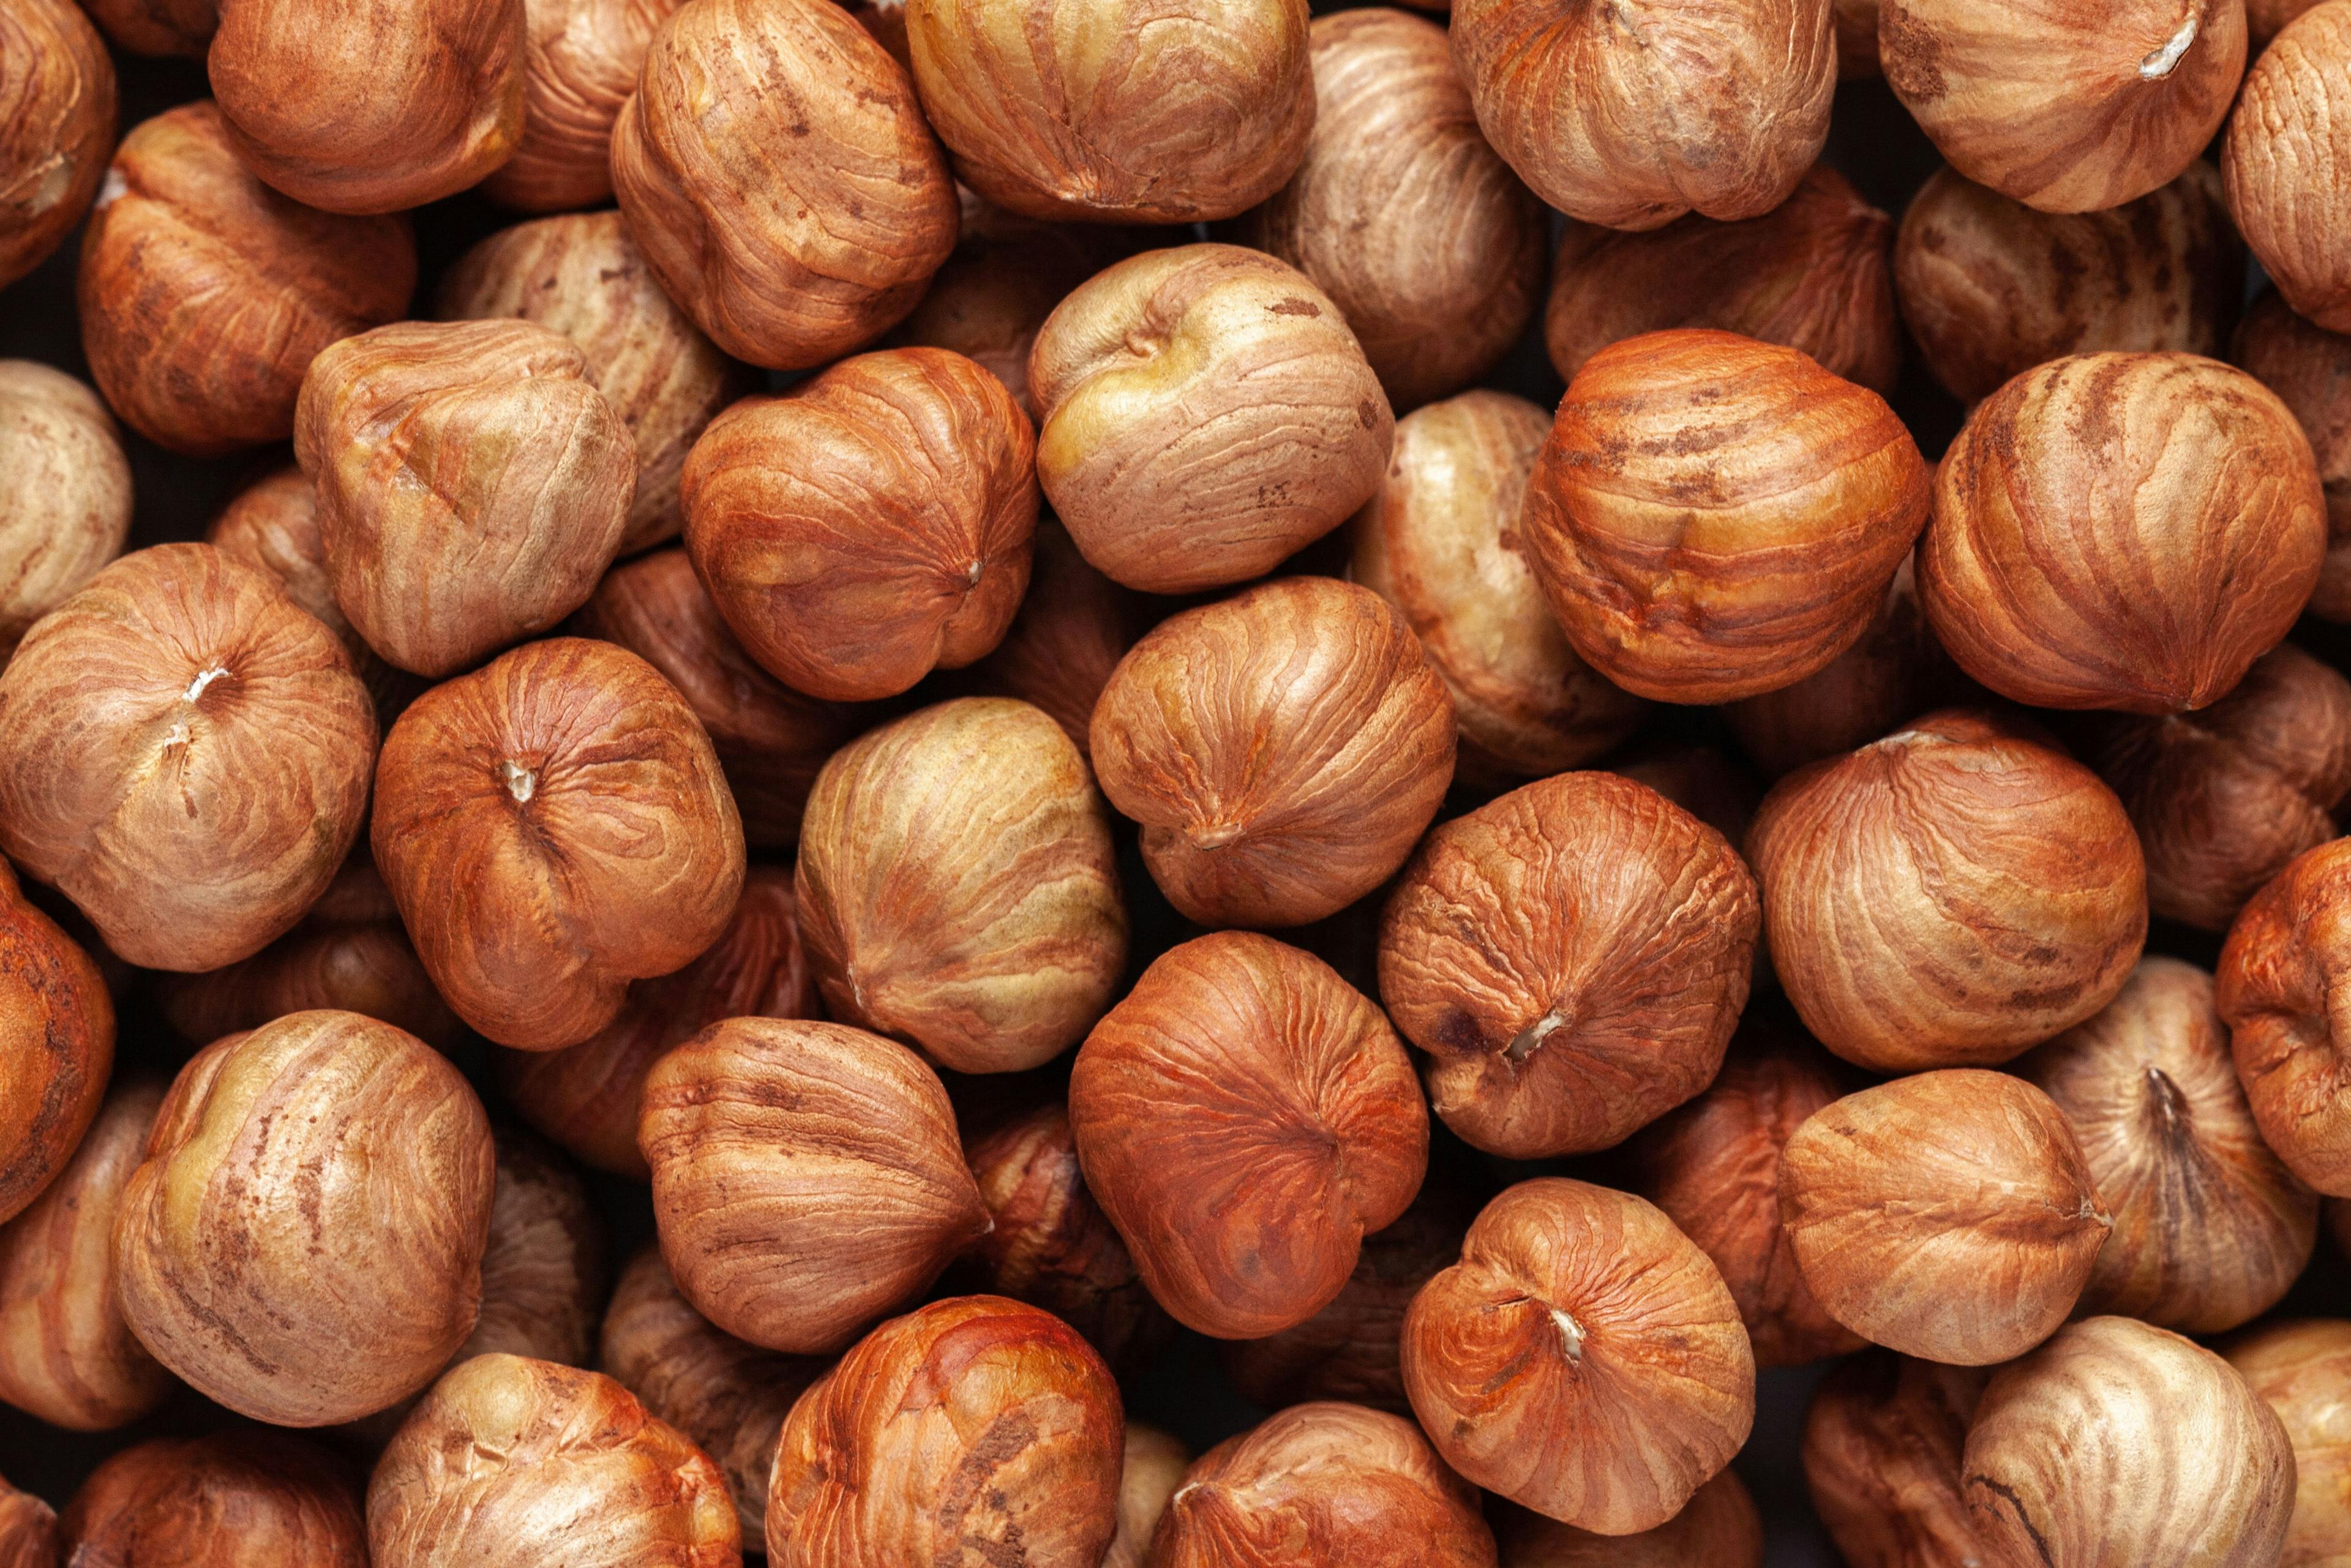 Hazelnut background. Peeled hazelnut kernels | Image Credit: © Svetlana - stock.adobe.com